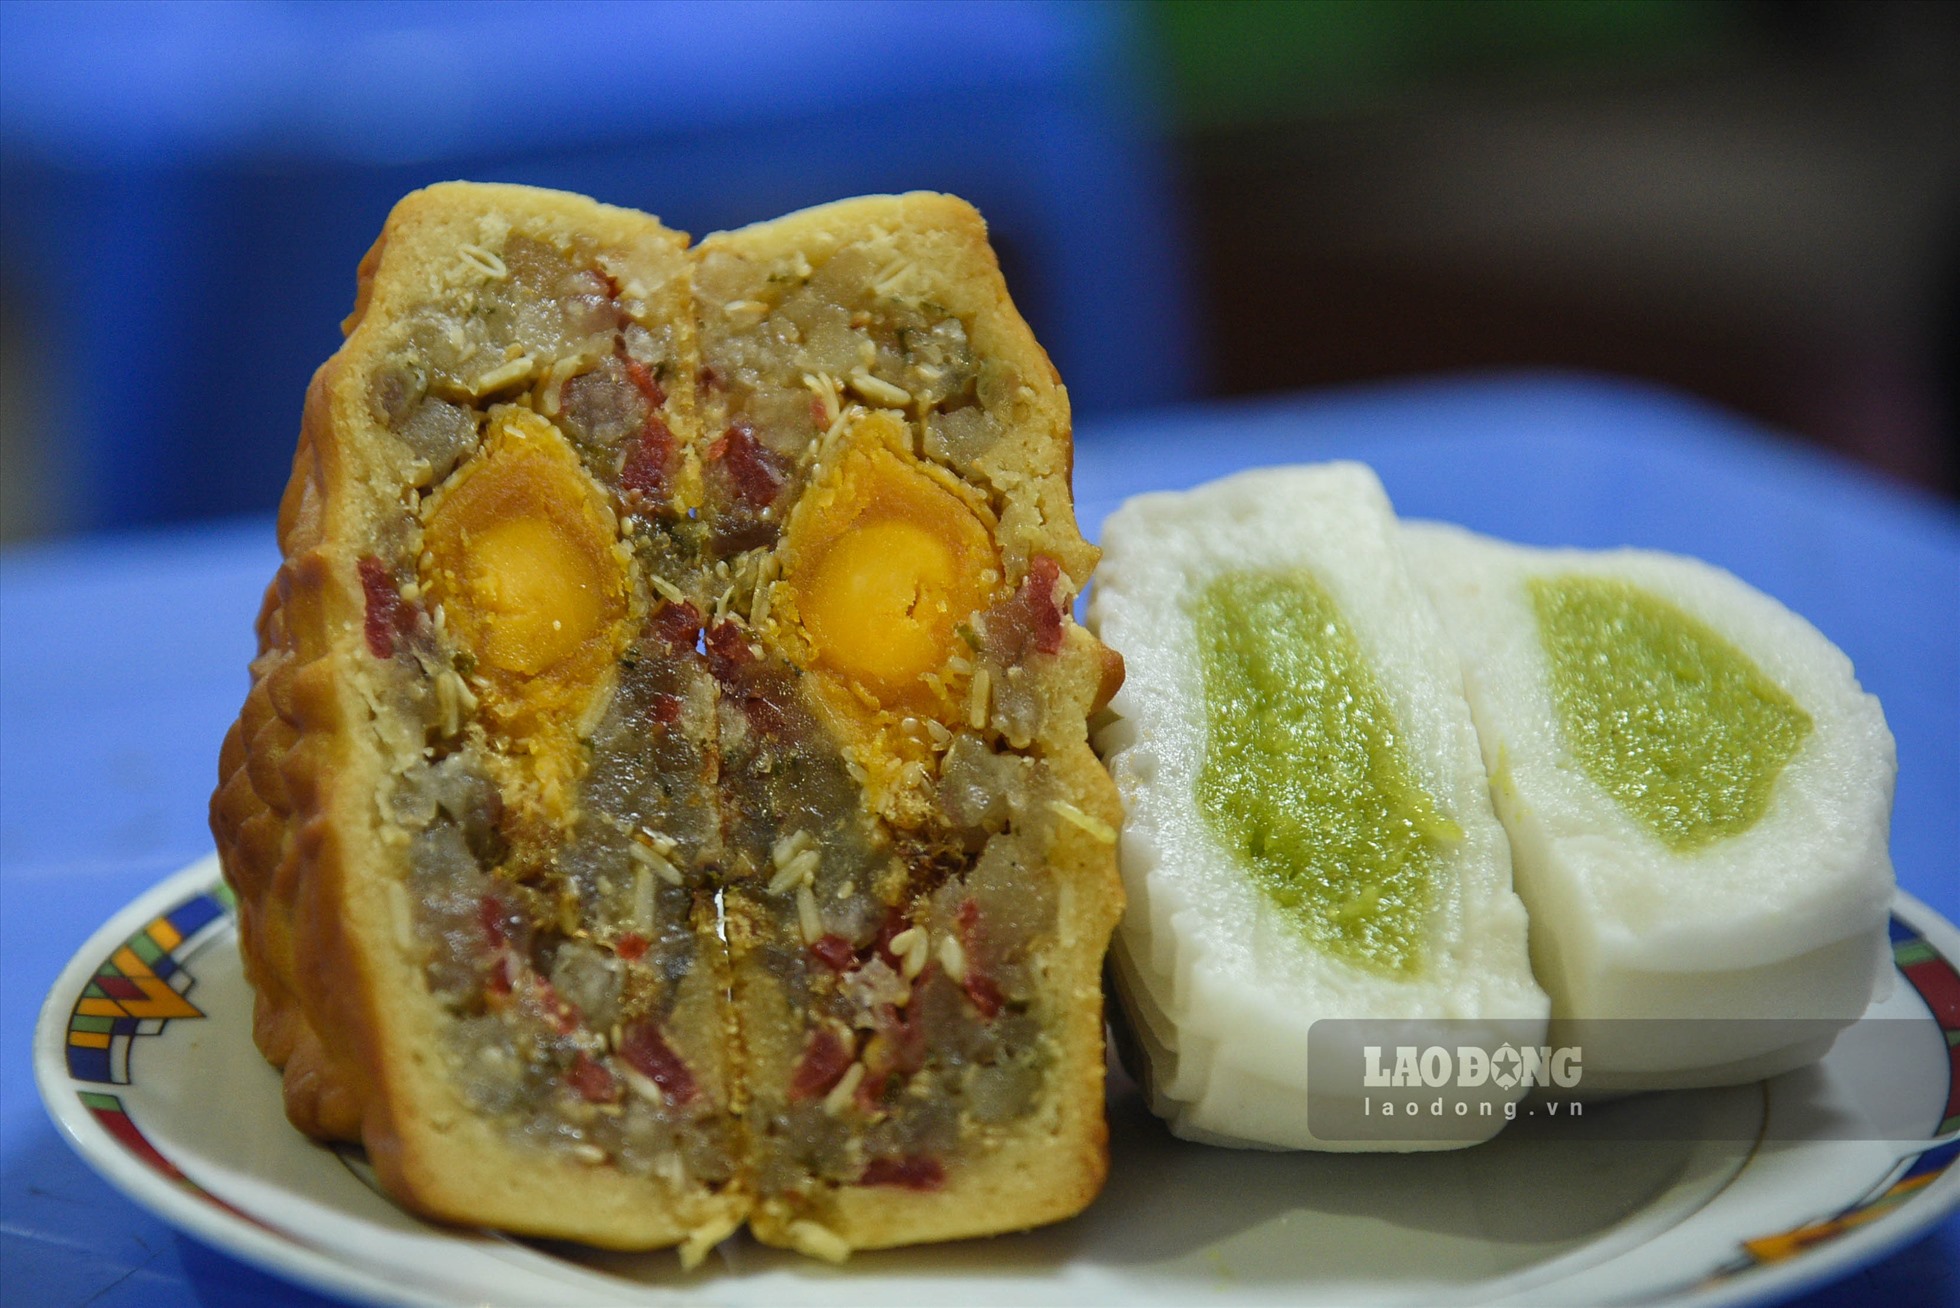 Các loại bánh truyền thống như bánh dẻo, bánh nướng nhân đậu xanh, nhân thập cẩm có giá 25.000-60.000 đồng/chiếc tùy loại.